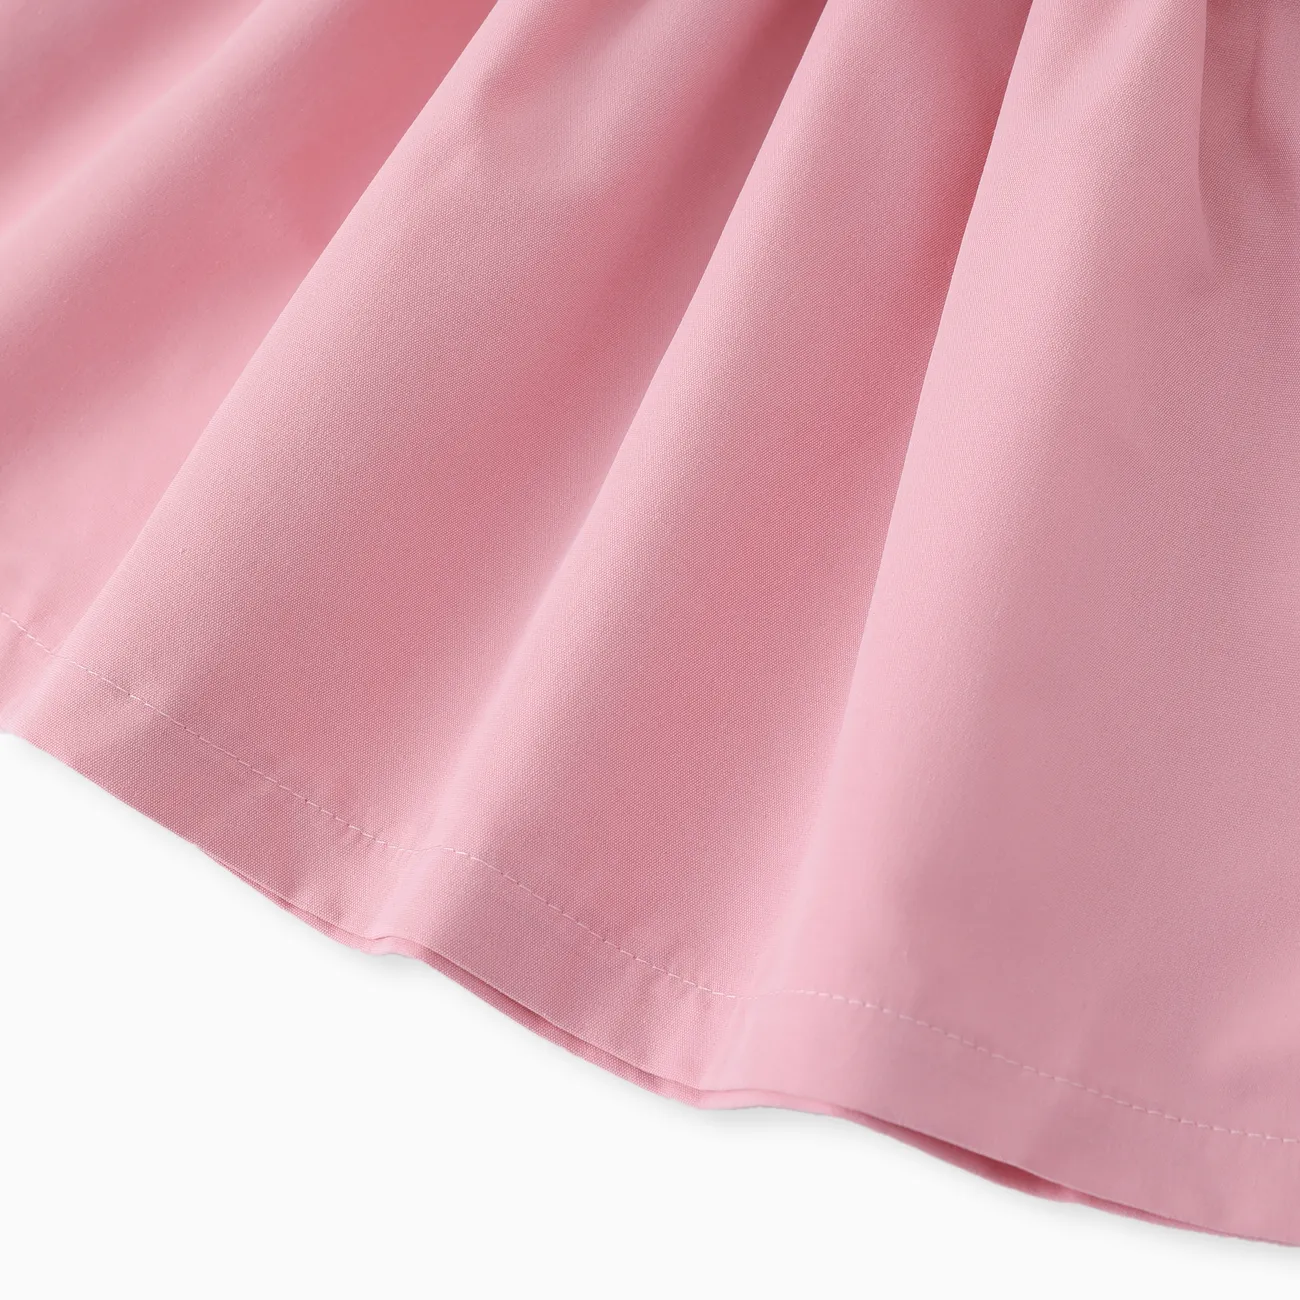 2件 嬰兒 布料拼接 甜美 短袖 連衣裙 粉色 big image 1